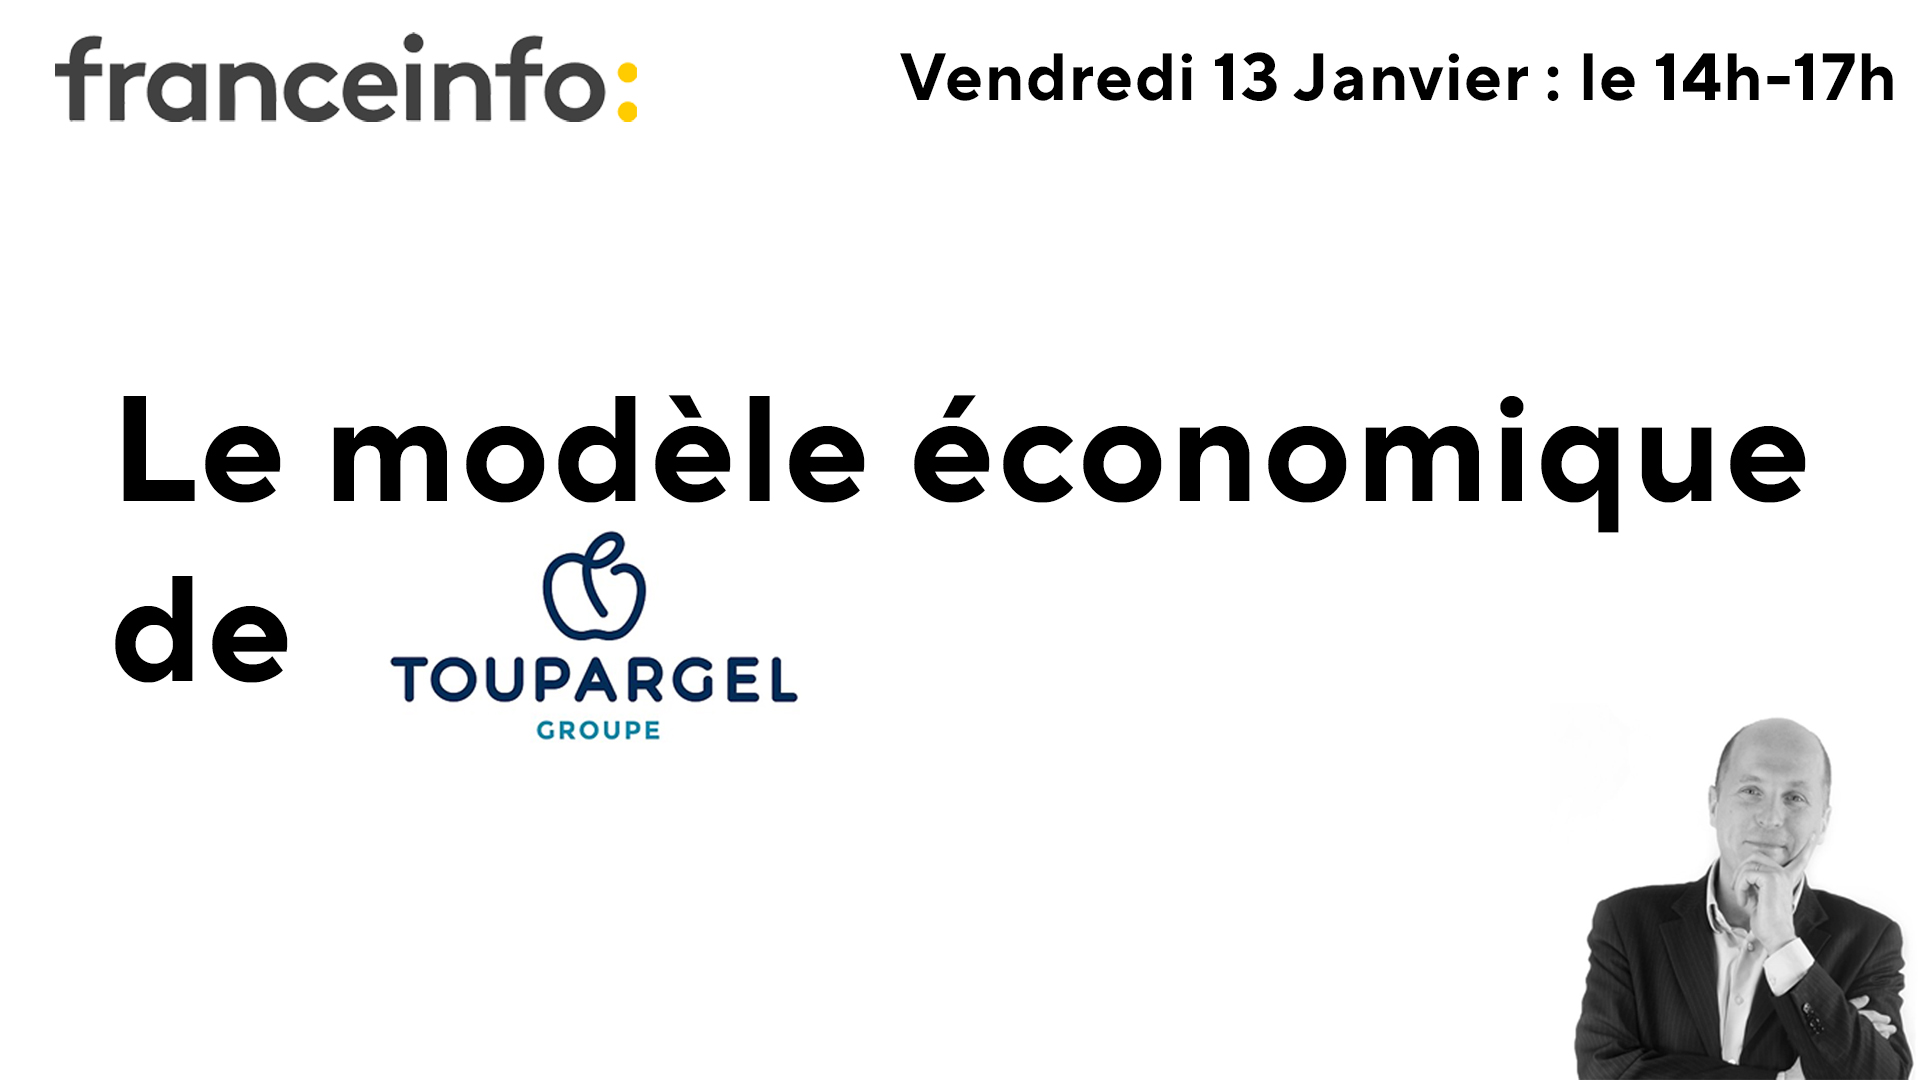 Le modèle économique de Toupargel / France Info